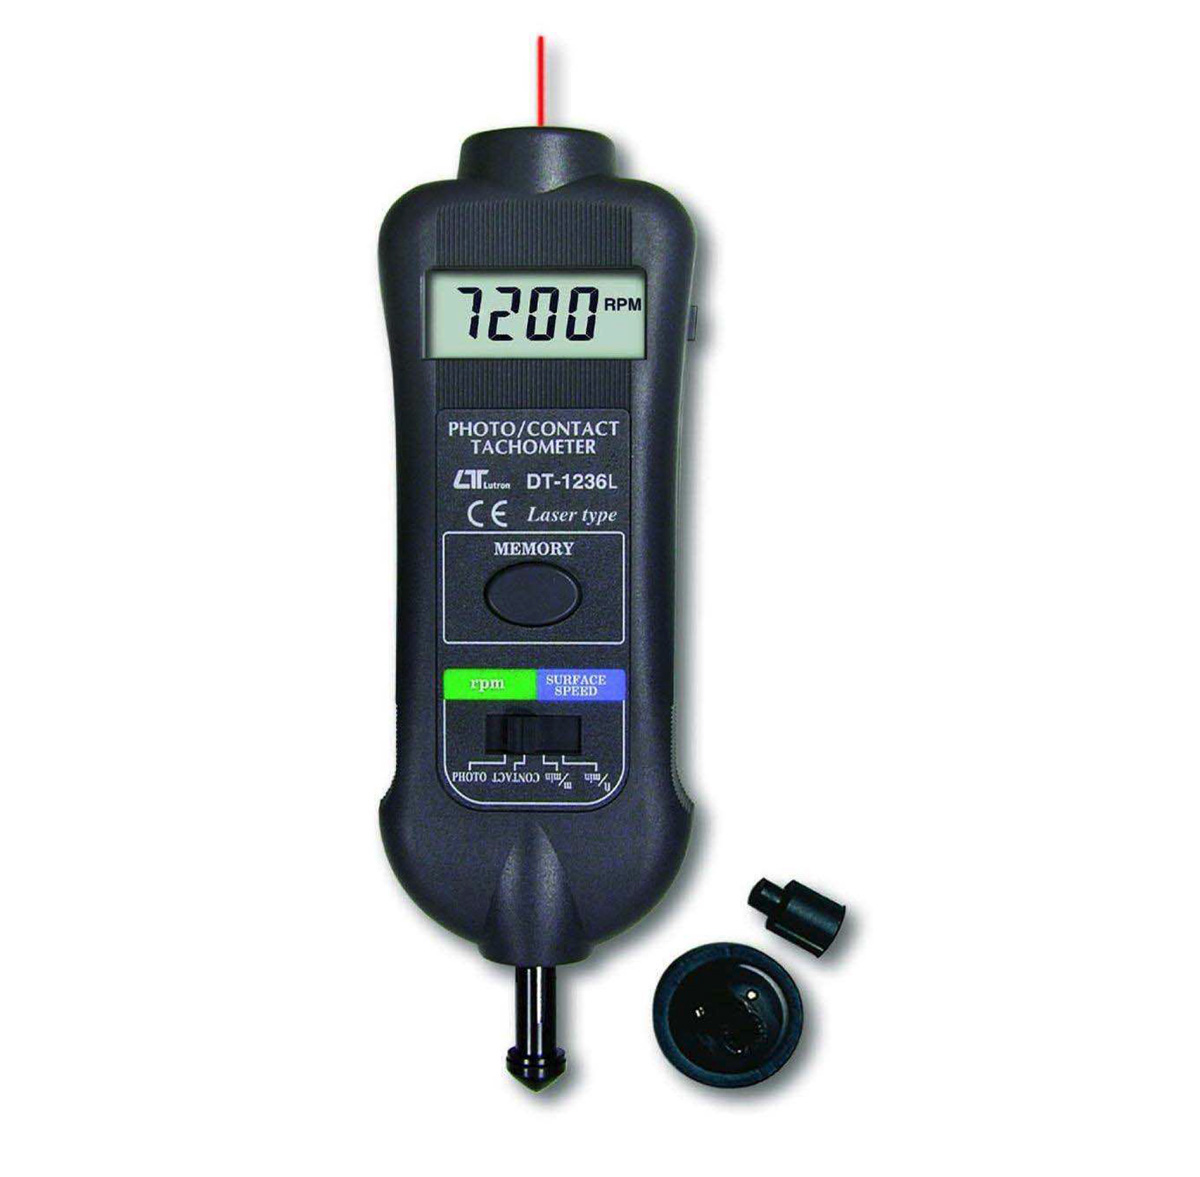 Tacómetro digital láse y contacto distancia de medición de hasta 200cm, LUTRON DT-1236L, comprar tacometro digital laser